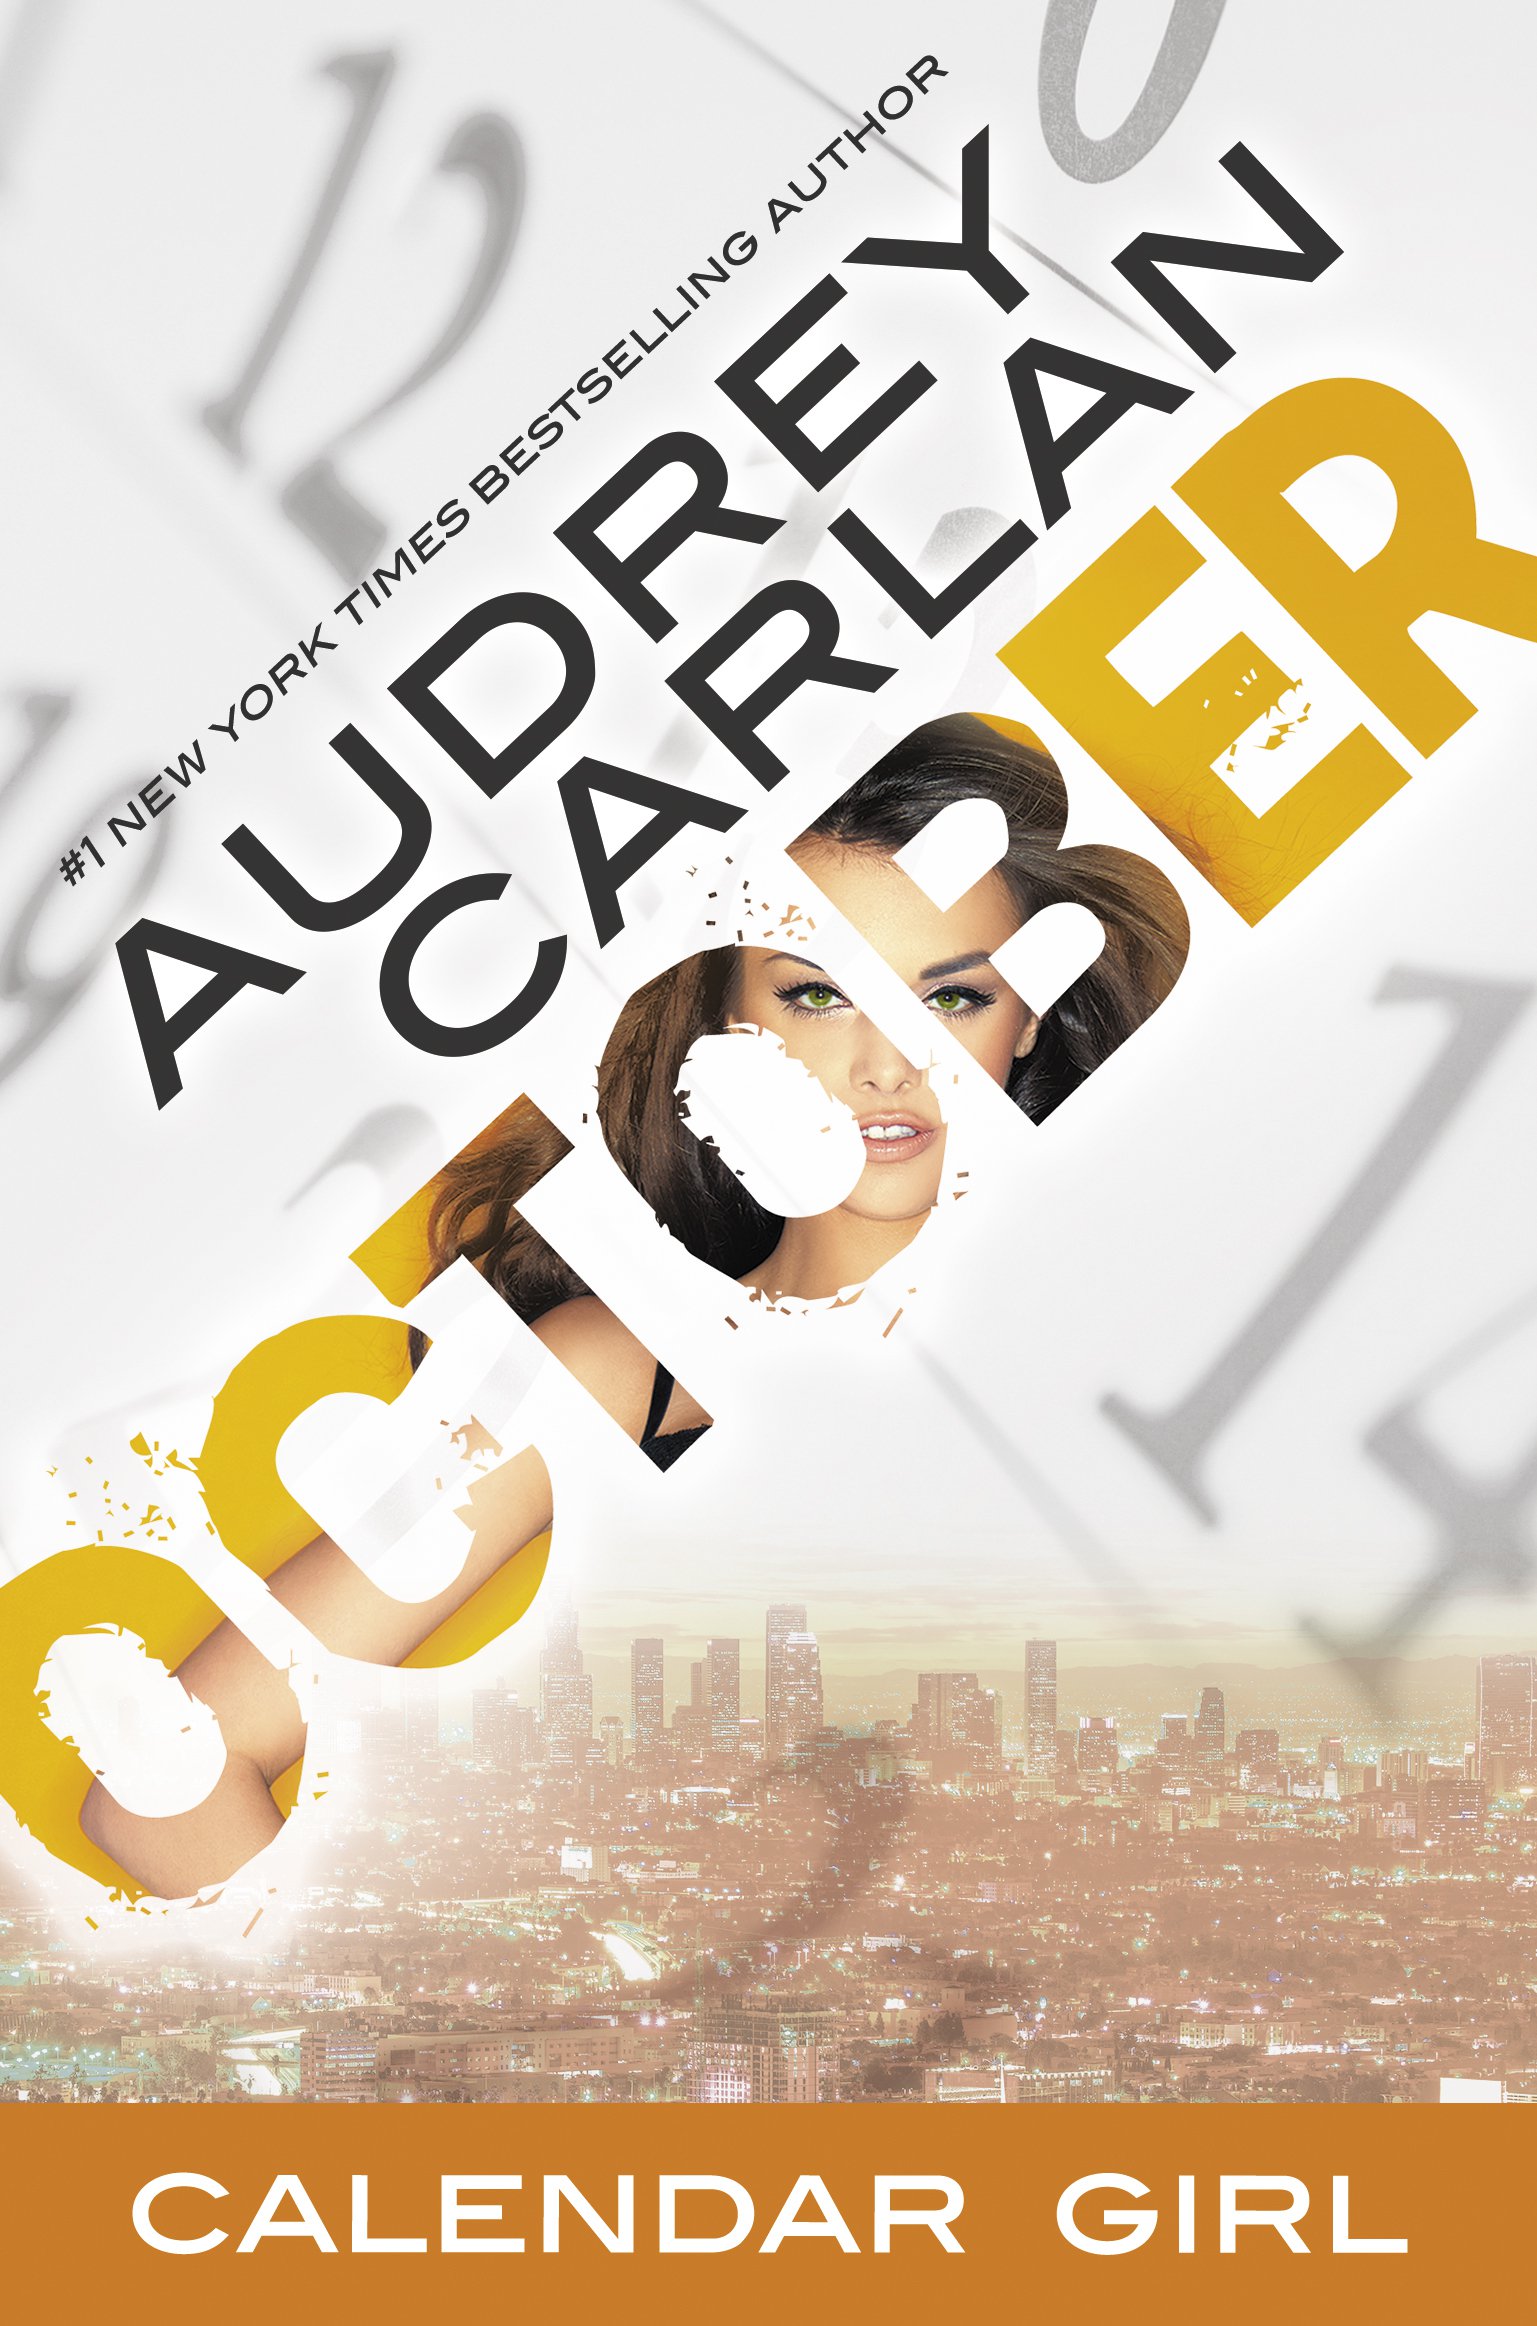 Audrey Carlan October